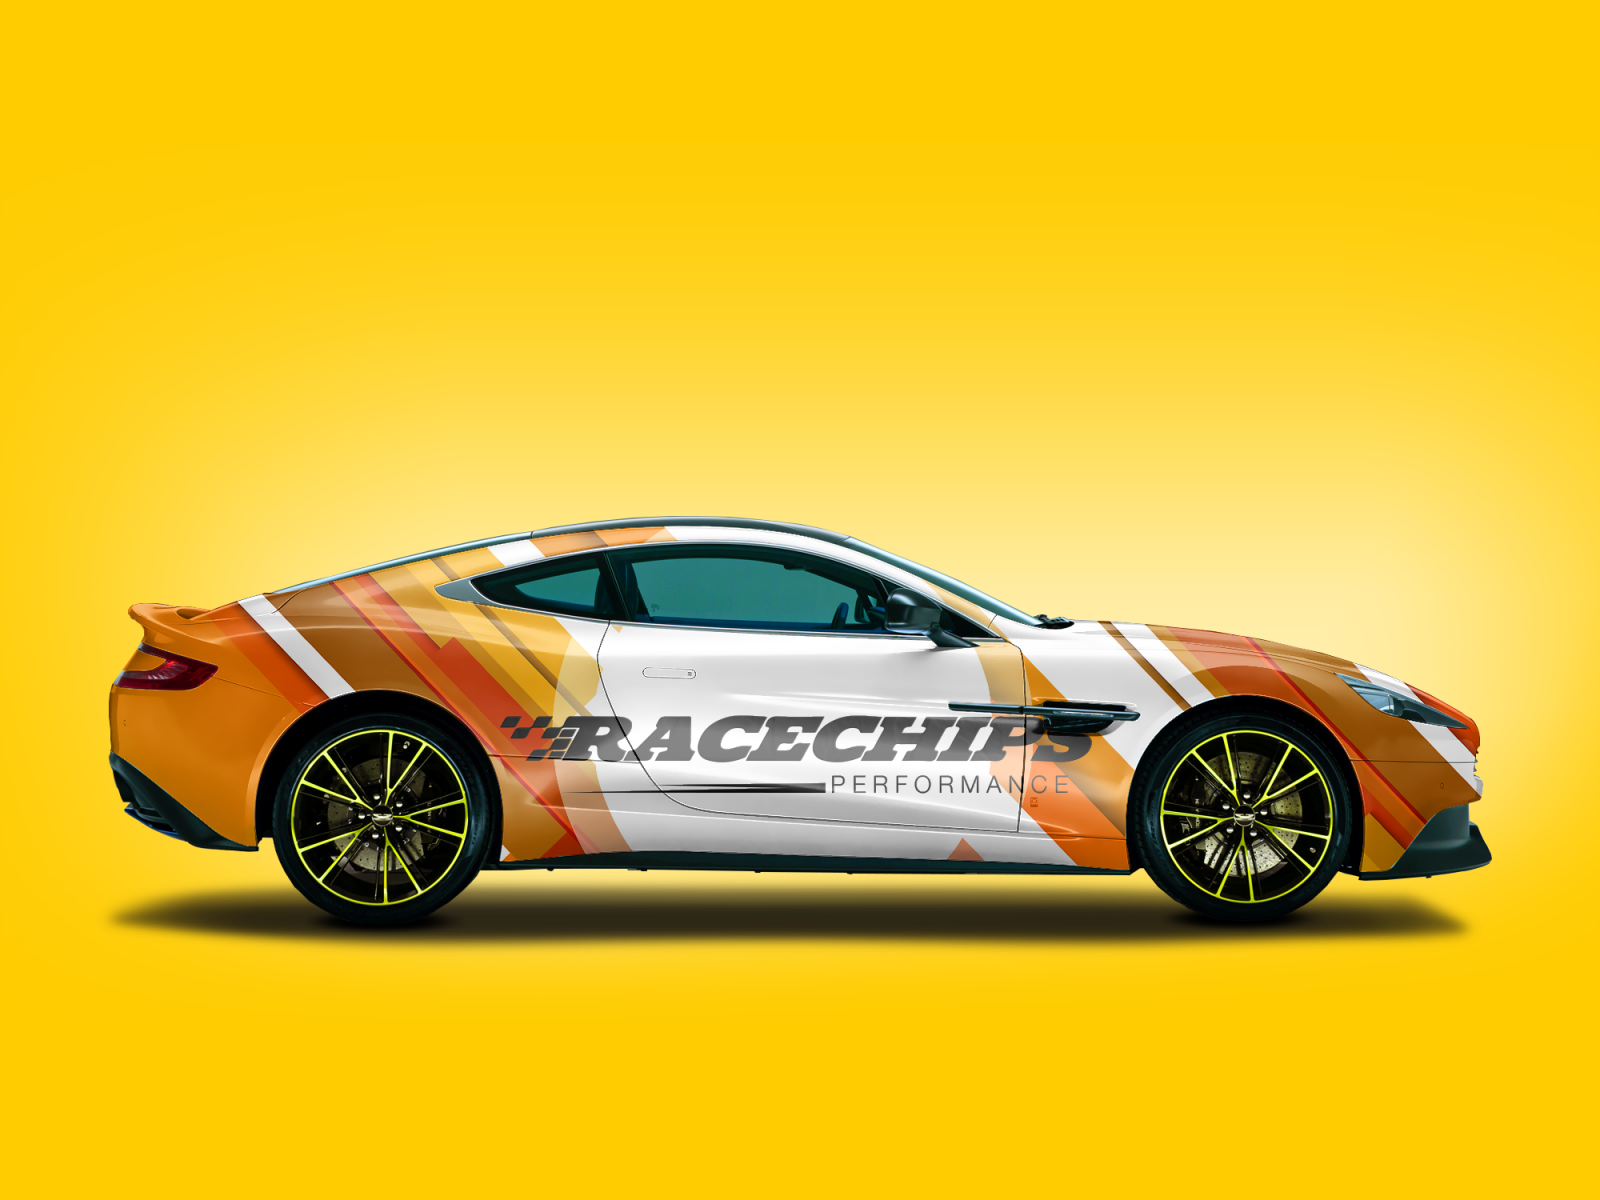 RaceChips Performance Agência Cvwebdesigner®Criação de websites profissionais